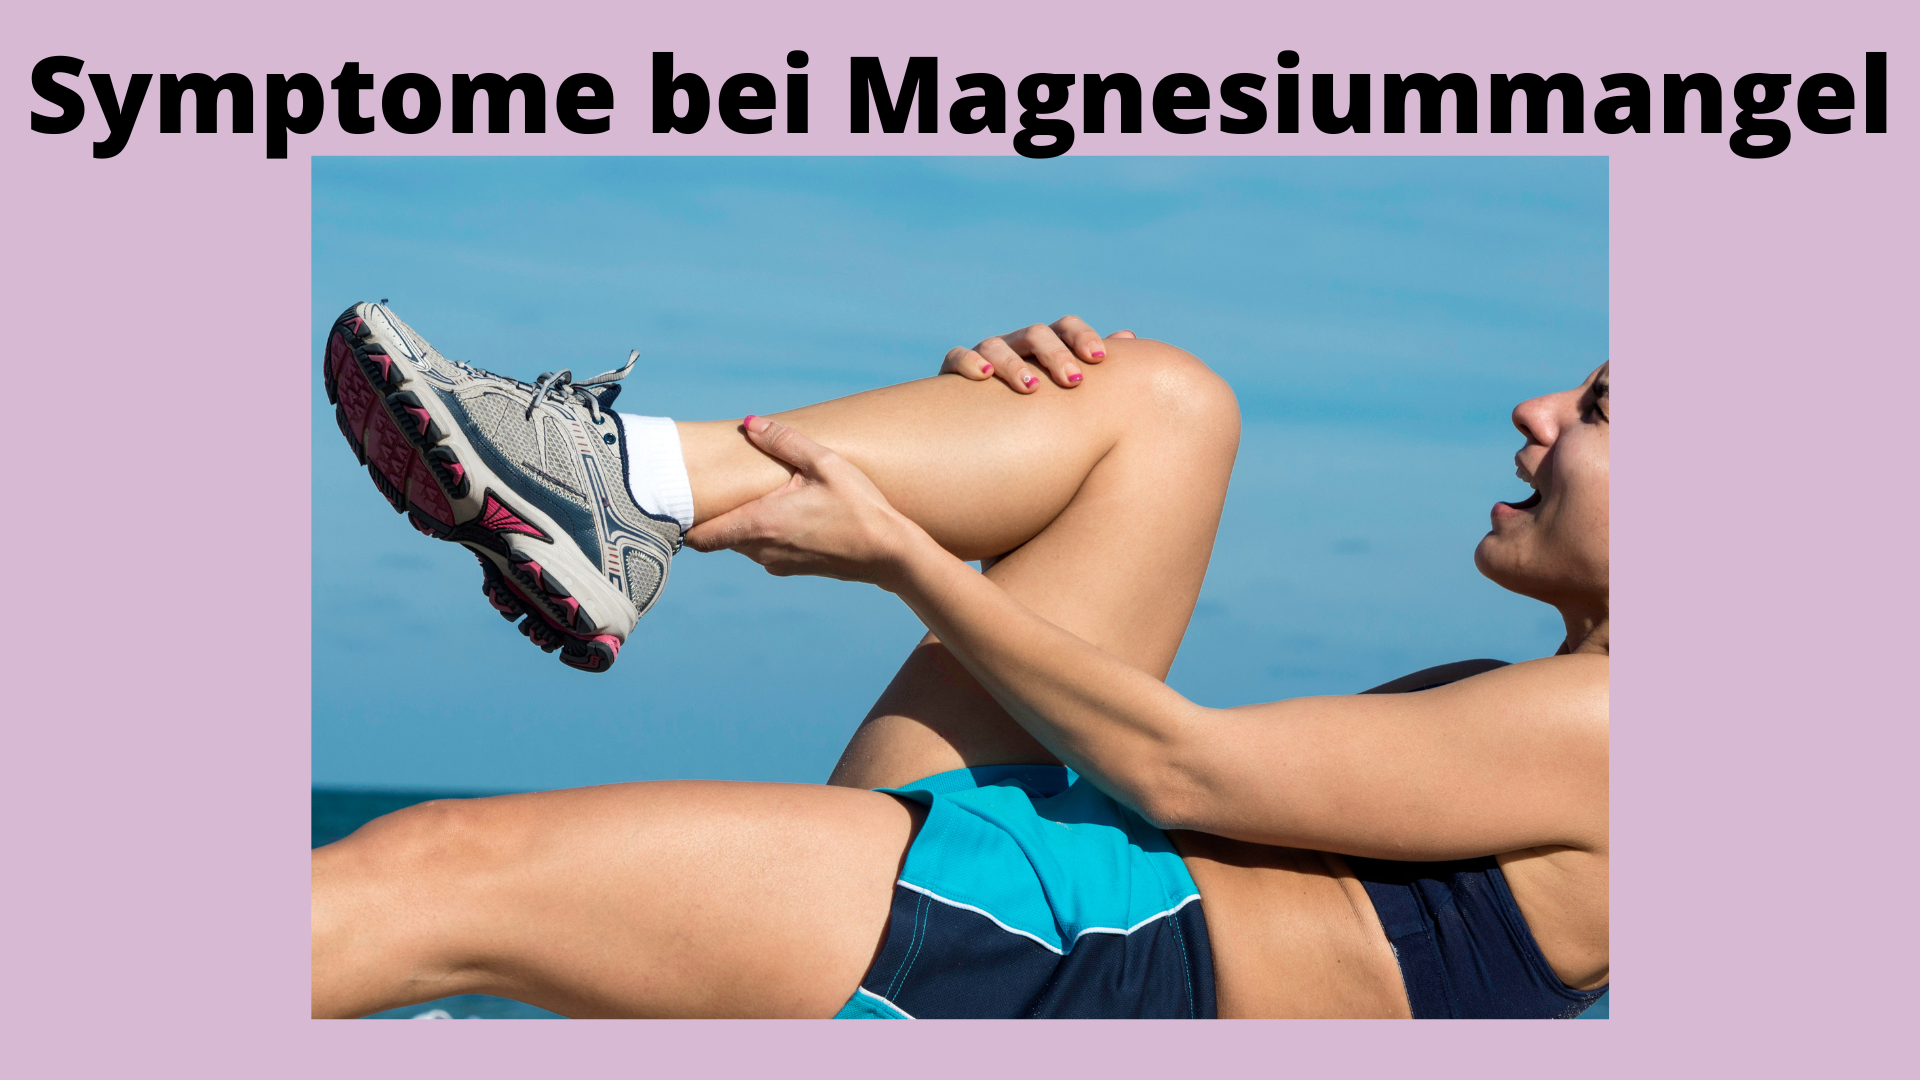 Symptome bei Magnesiummangel; Frau mit Wadenkrämpfen